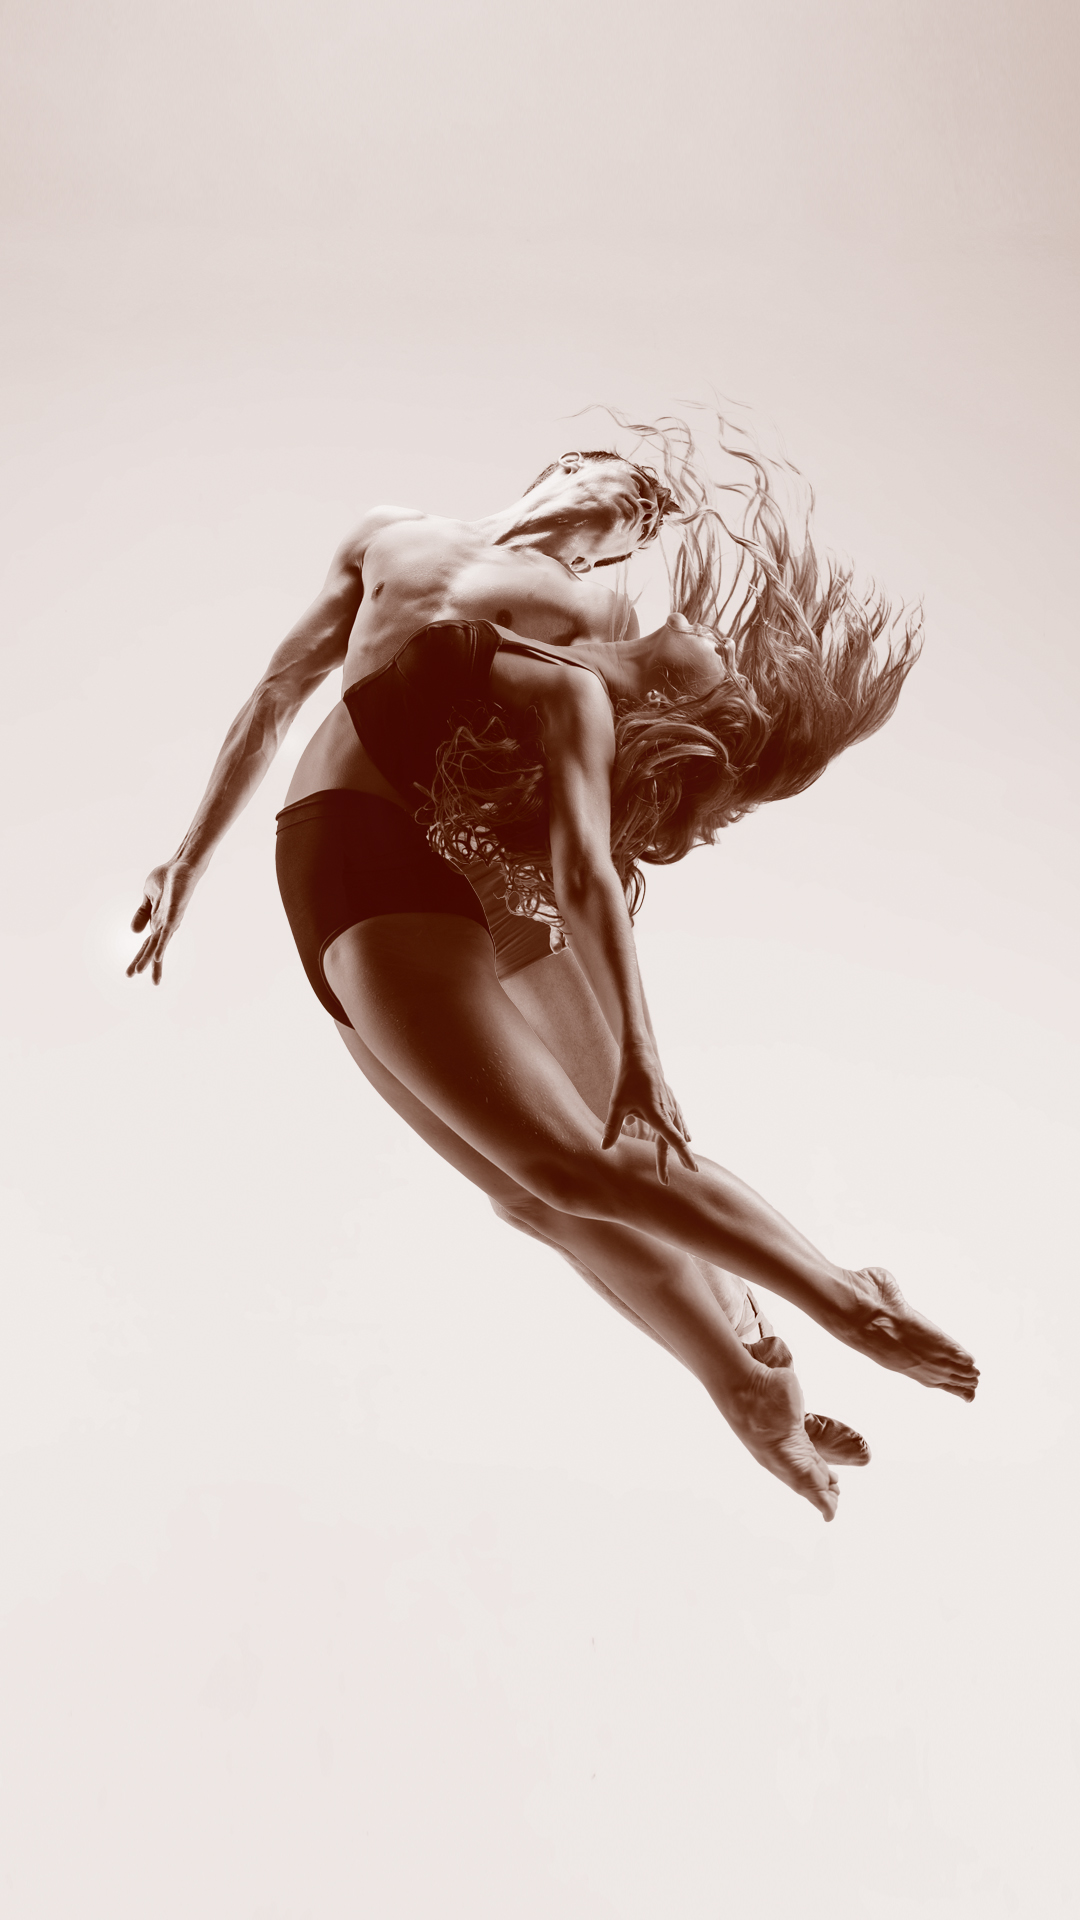 Imagen de una persona llevando a cabo una coreografía de danza flotando en el aire